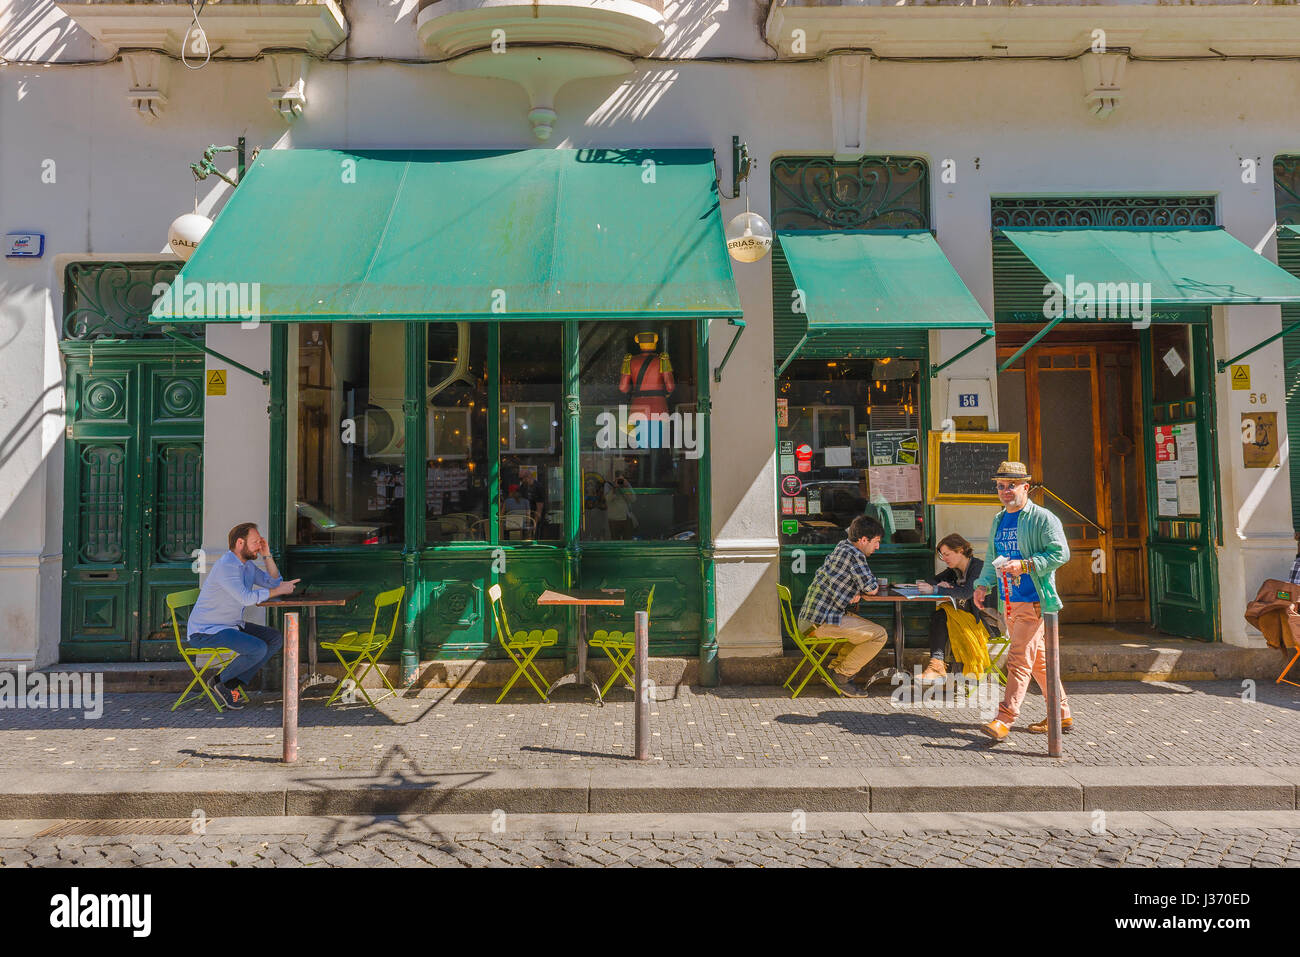 Cafe Portugal, vista in estate di persone sedute ai tavoli all'esterno di un bar caffetteria in una strada tranquilla nella storica zona della città vecchia di Porto, Portogallo. Foto Stock